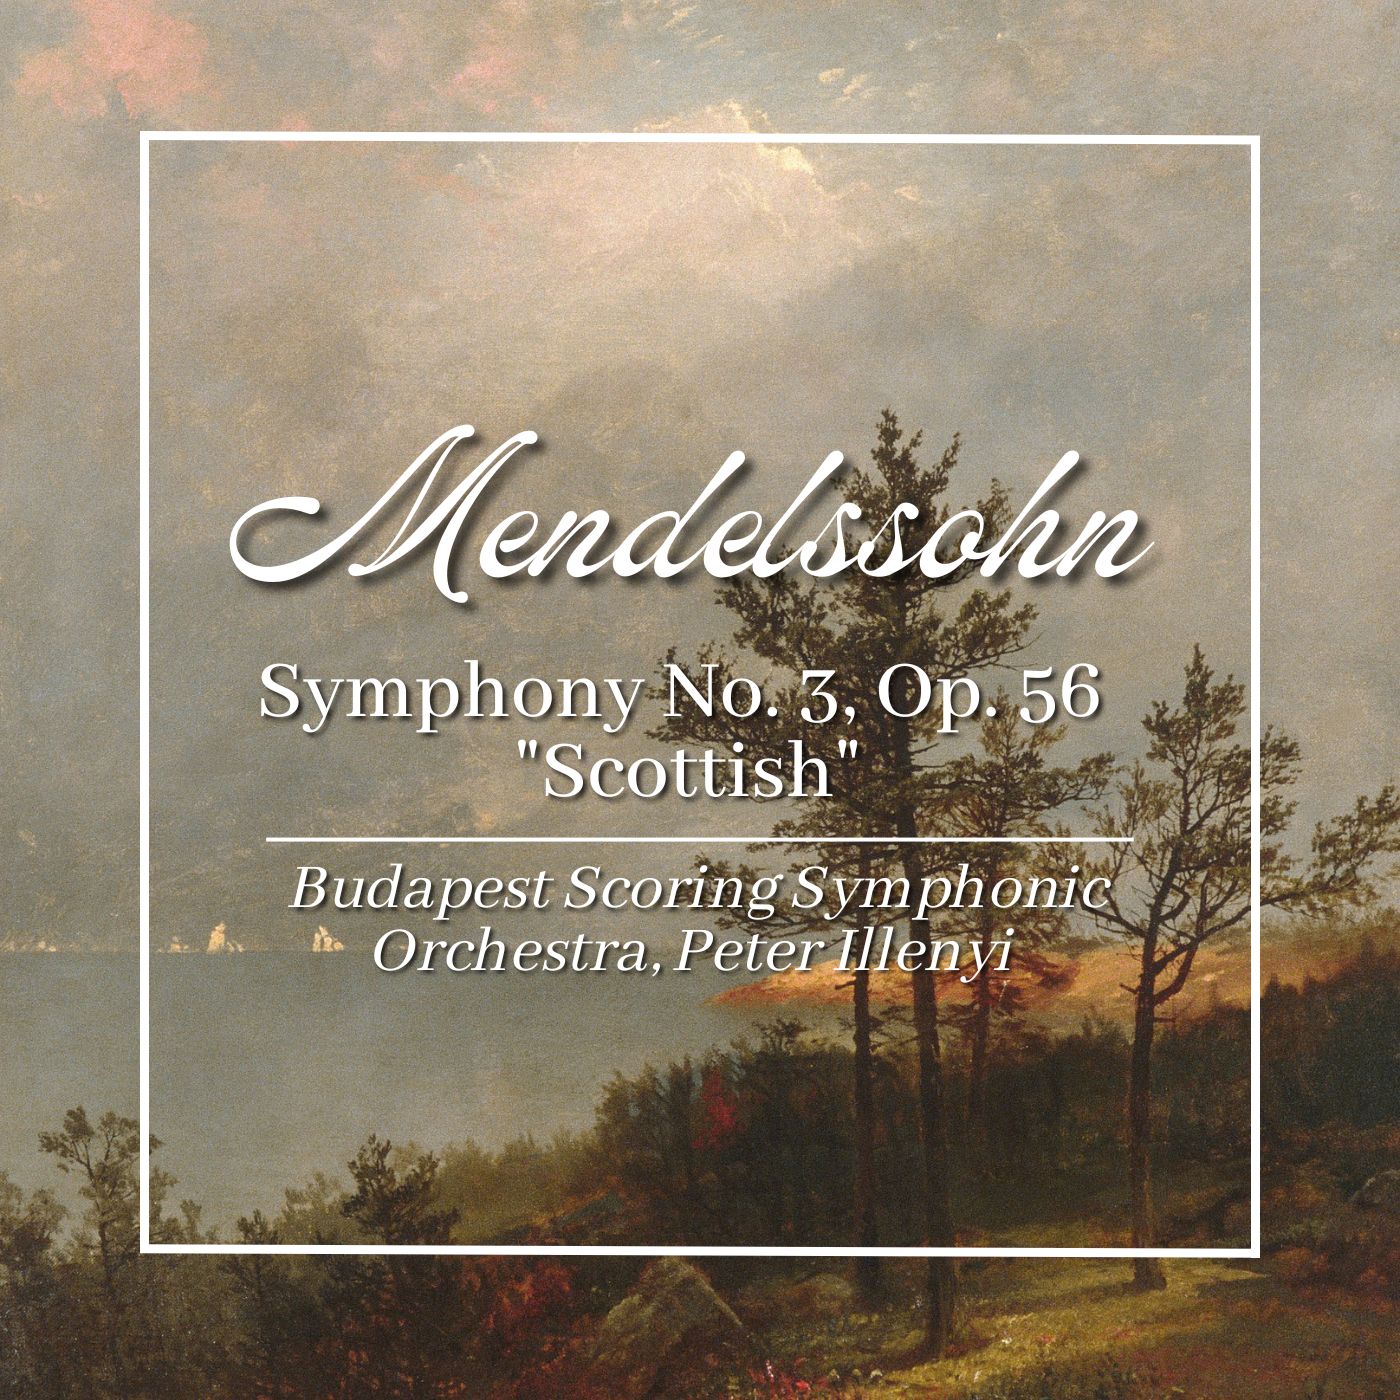 Mendelssohn: Symphony No. 3, Op. 56 